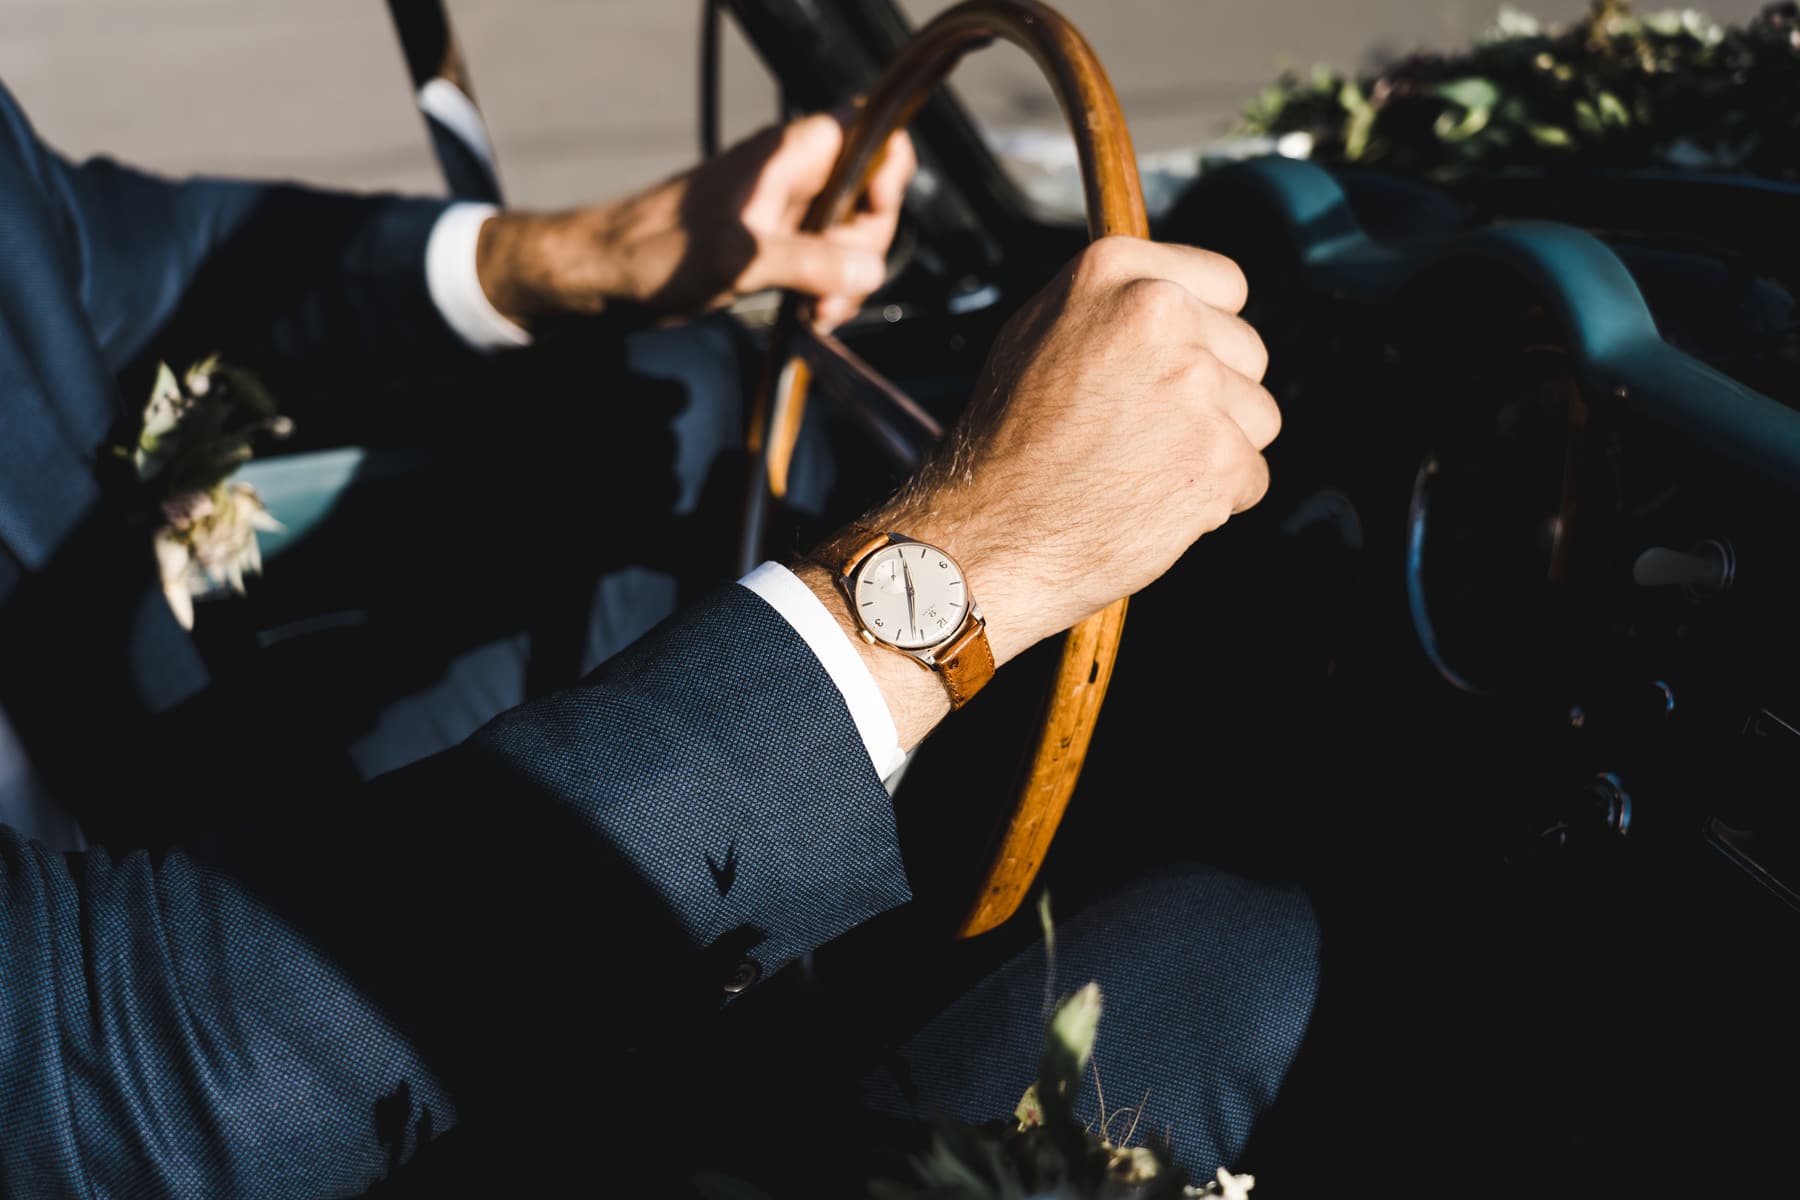 Le mariée conduit une oldtimer avec une belle montre à son poignet